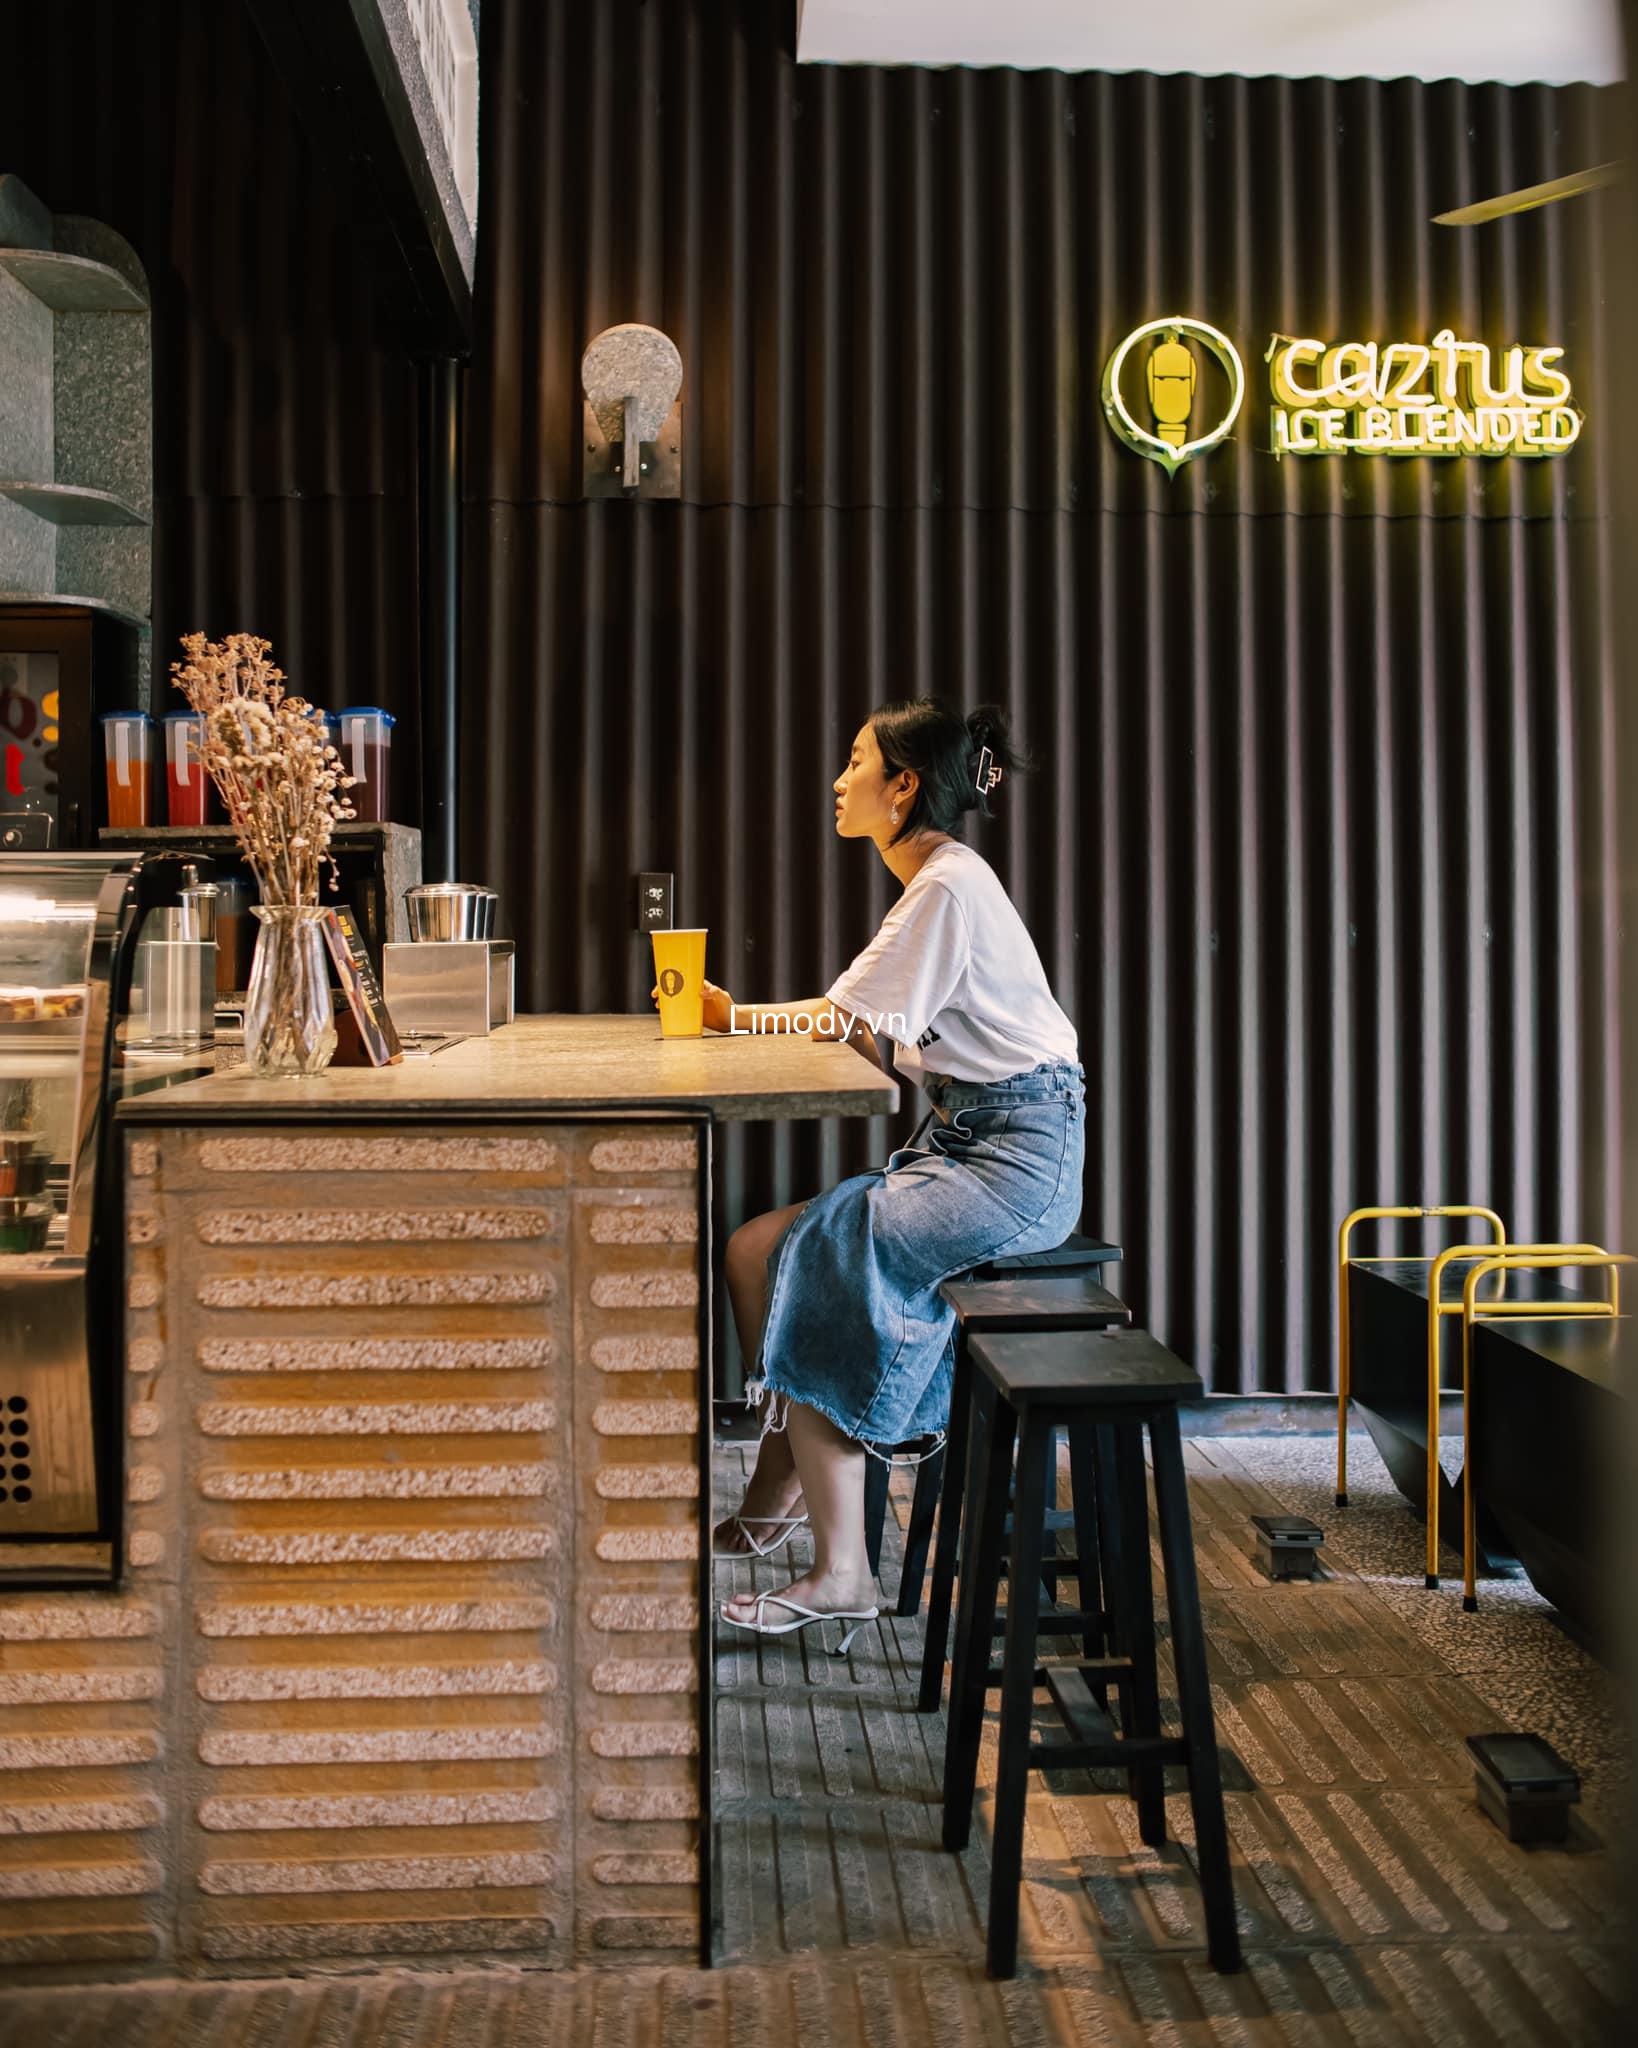 Top 15 Quán cà phê mua mang về gần đây ở Hà Nội – TPHCM ngon nhất